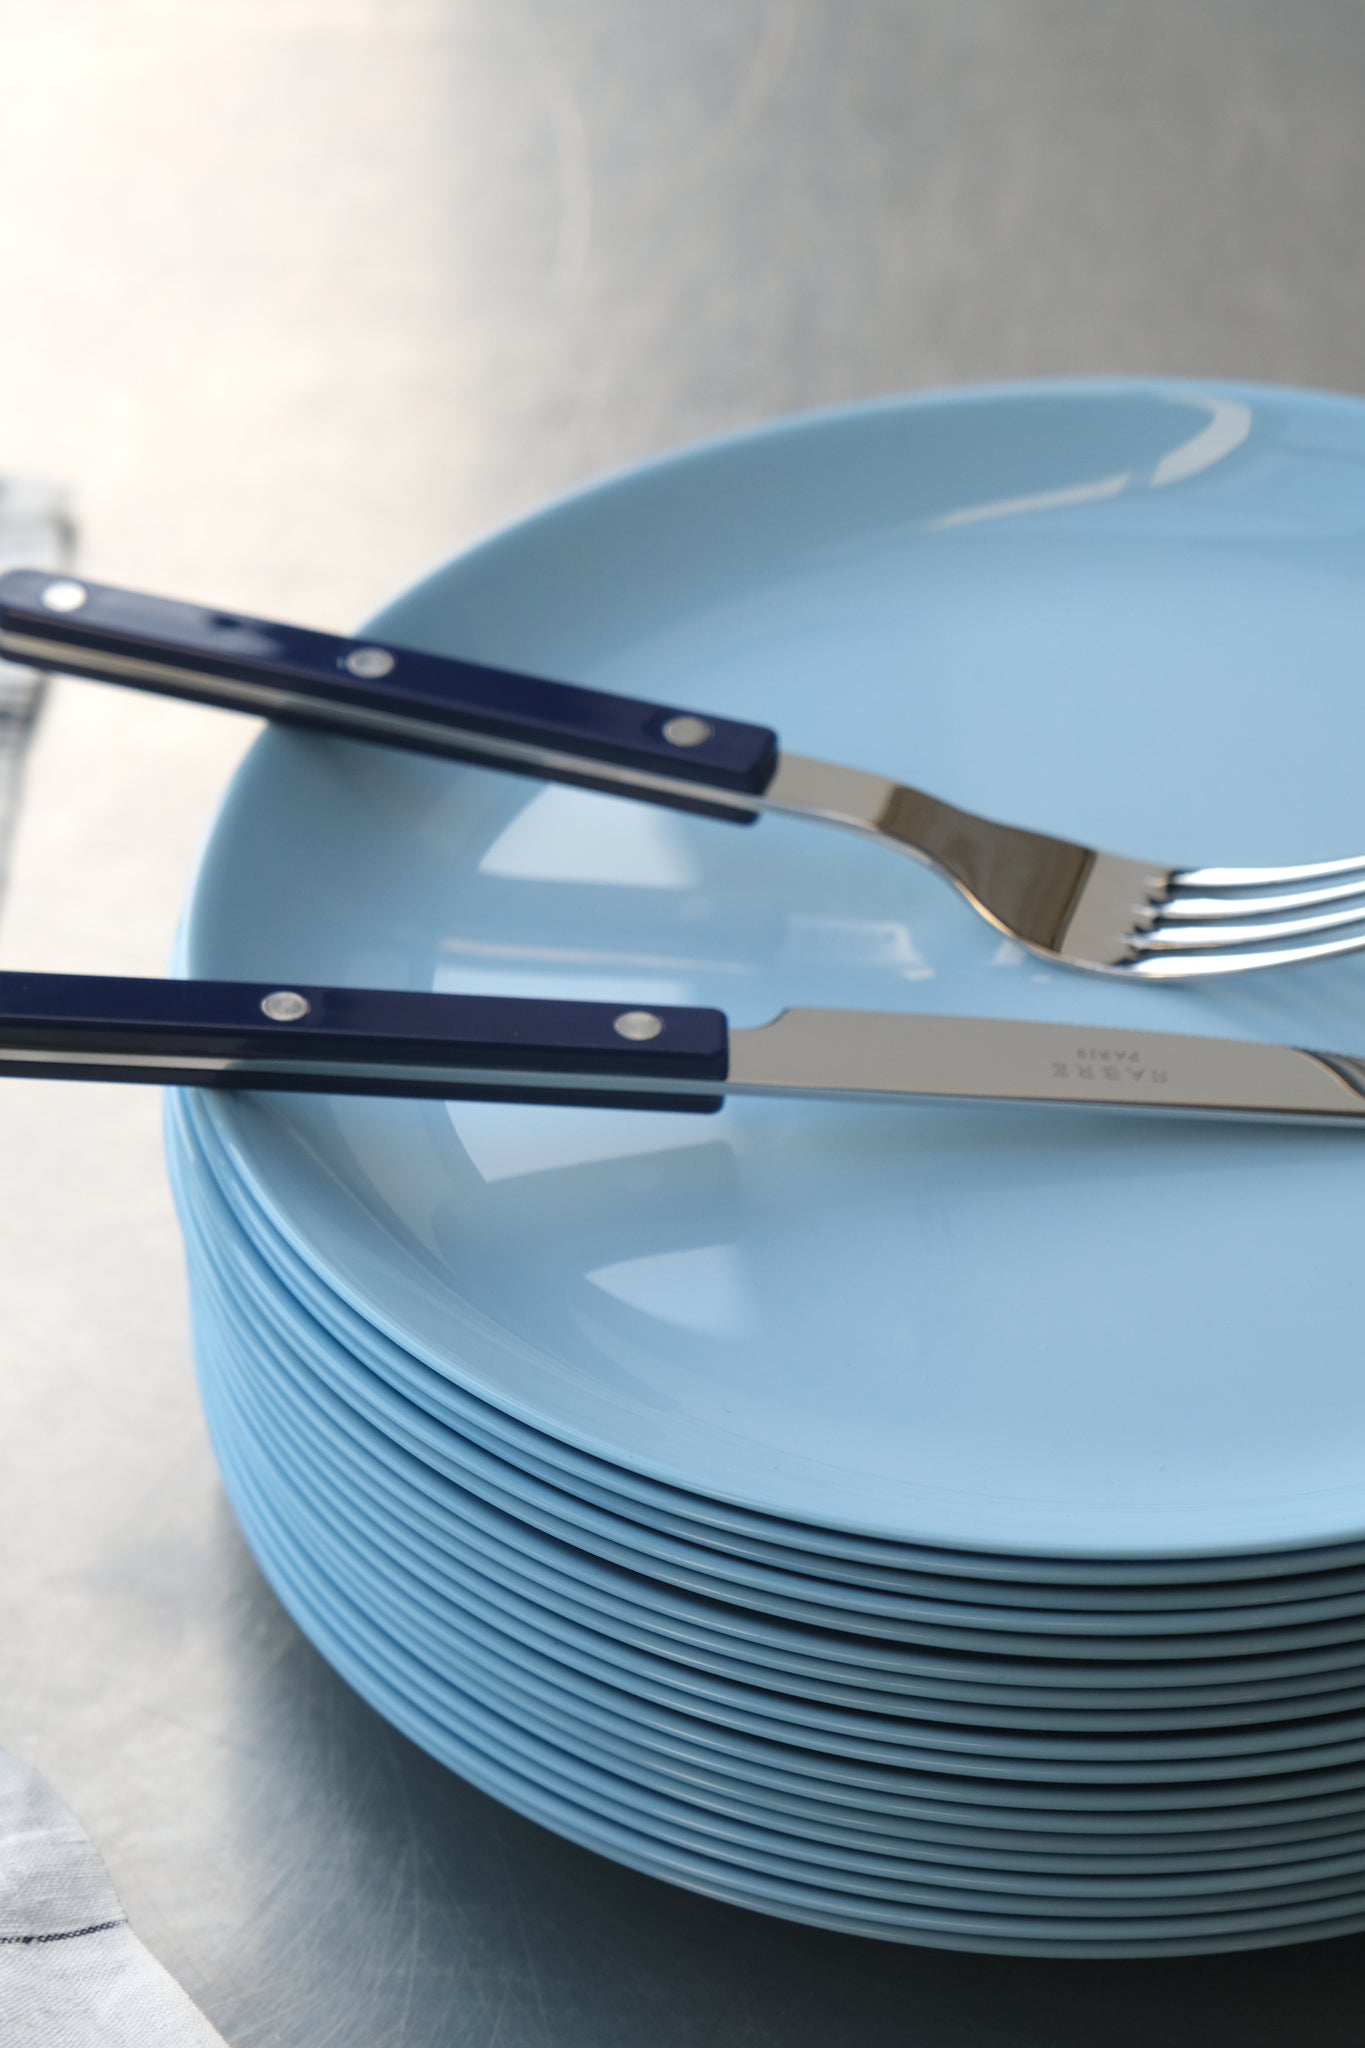 Tempered glass dinner plate light blue-Luminarc-[interior]-[design]-KIOSK48TH